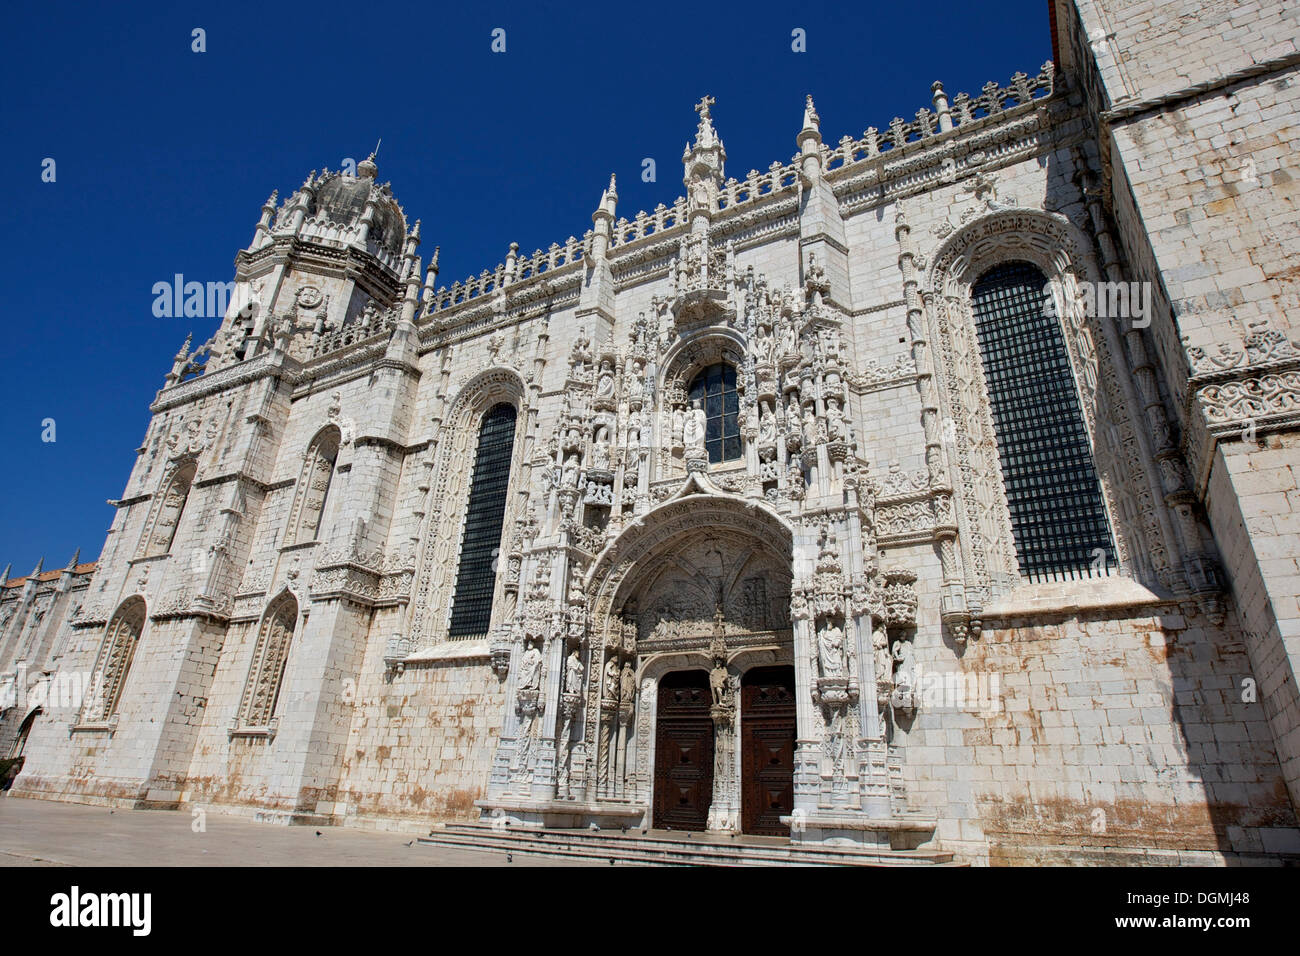 Mosteiro dos Jeronimos, hieronymites monastero, sito patrimonio mondiale dell'Unesco, in stile tardo gotico manuelino, Belem, lisbona Foto Stock